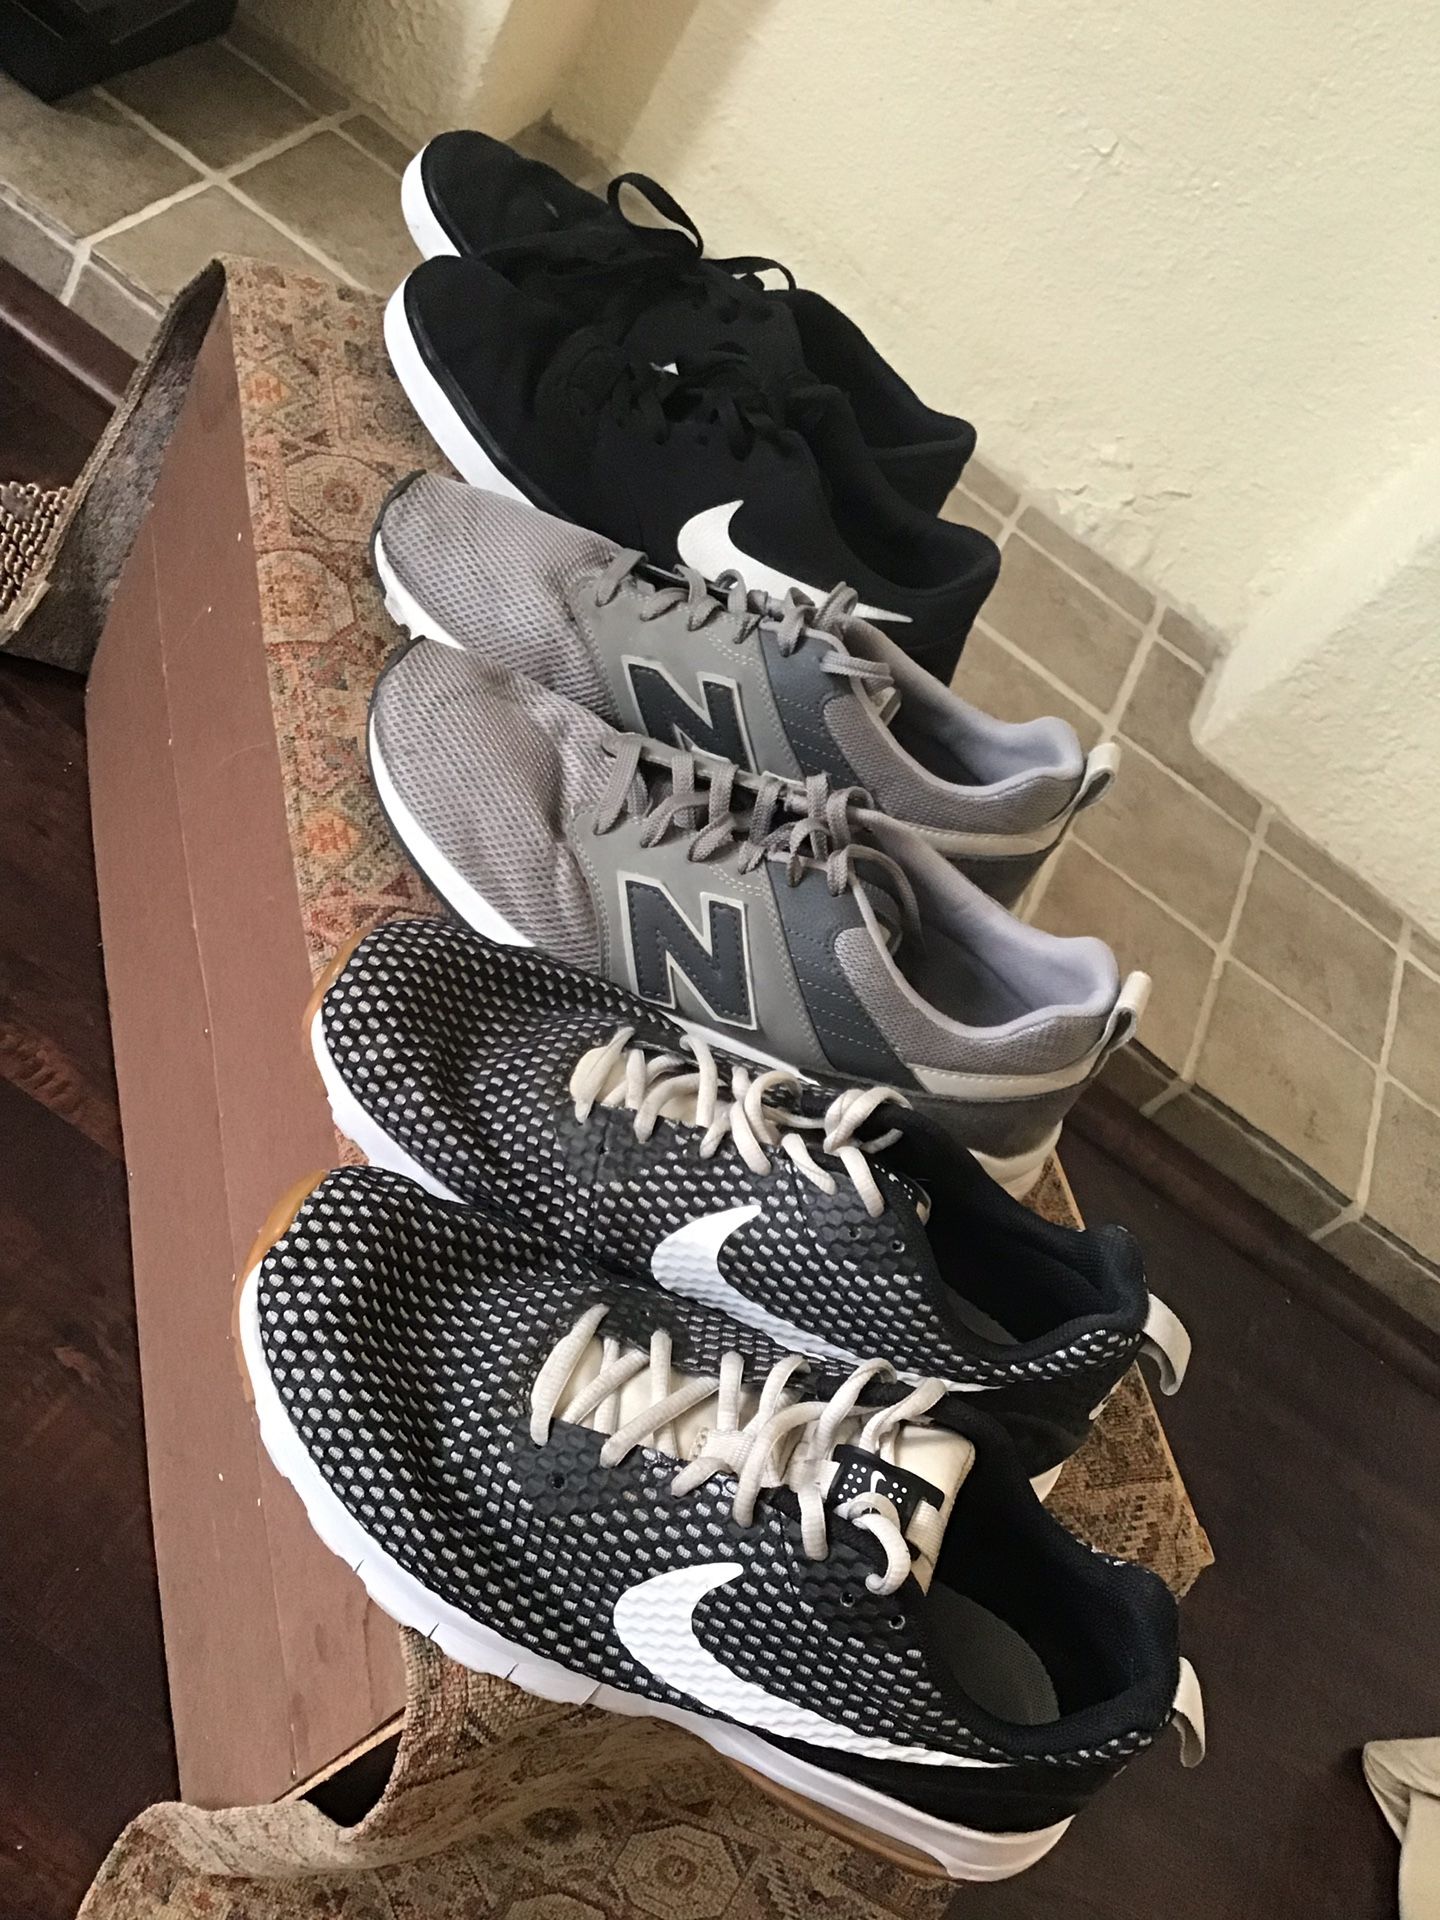 Men’s running shoes Nike bundle Nikes lot